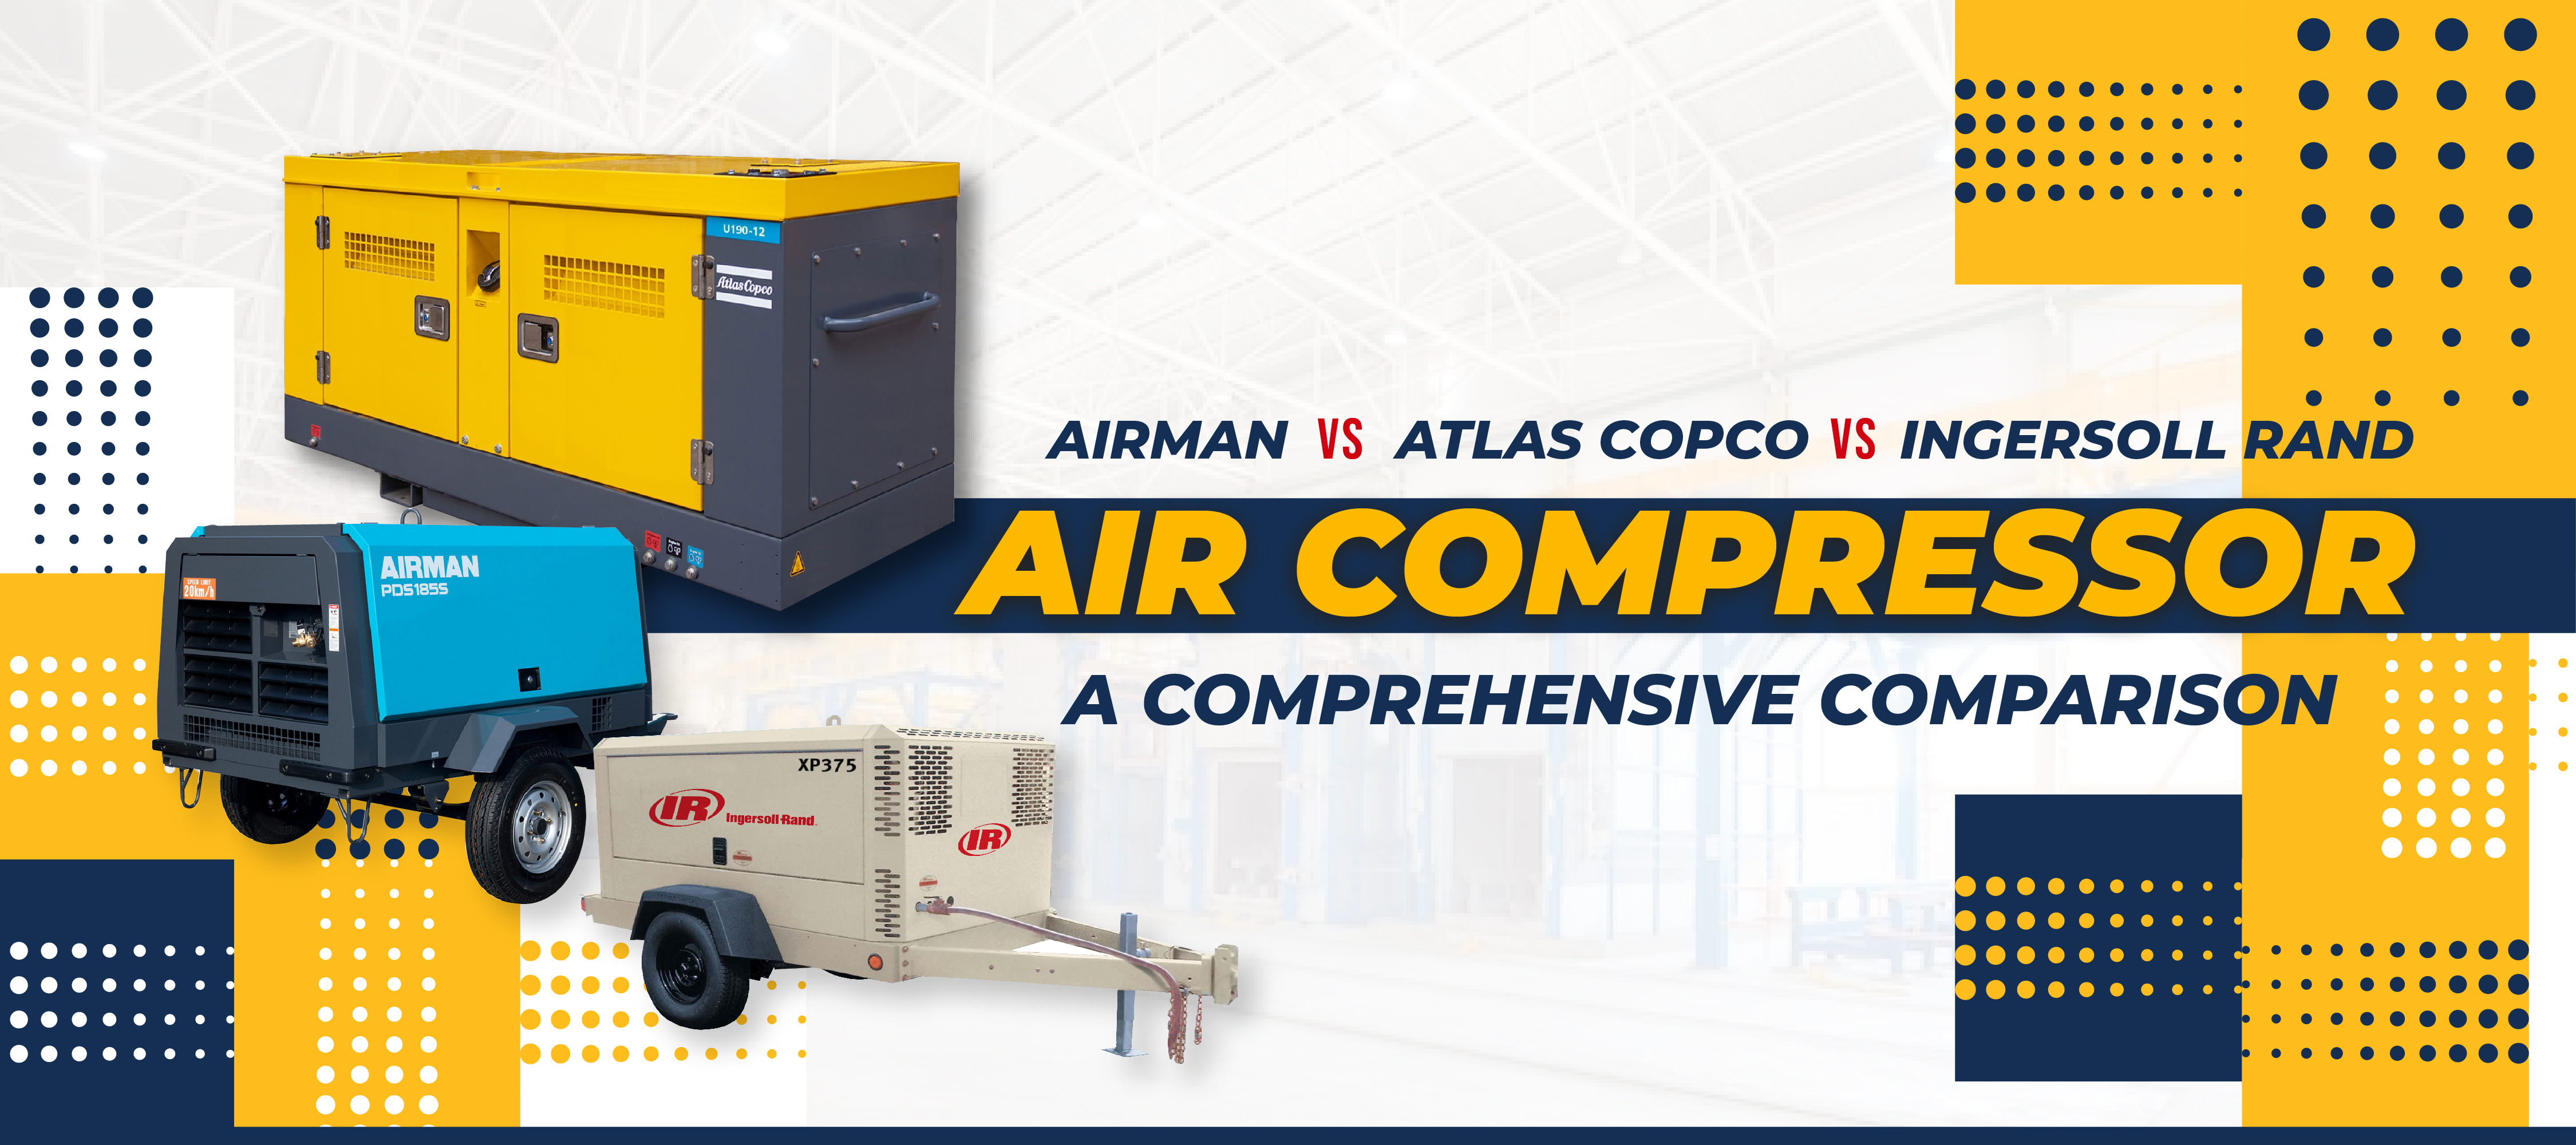 Airman_vs_Atlas-Copco_vs_Ingersoll-Rand-Air-Compressor-1.jpg